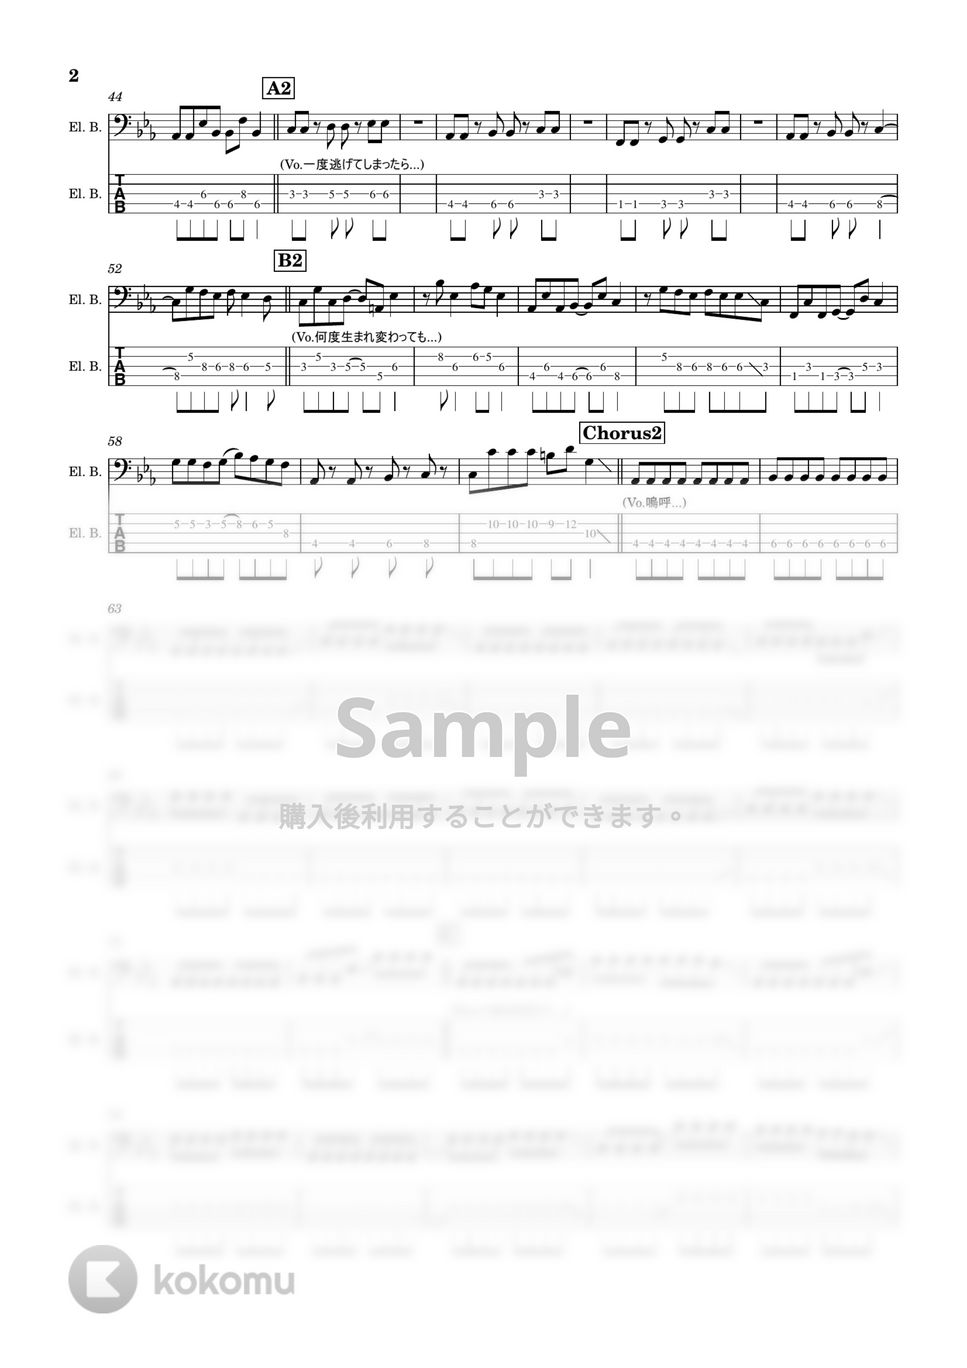 グッドモーニングアメリカ - 拝啓、ツラツストラ(5弦) (ベース/グッドモーニングアメリカ/たなしん/ドラゴンボール) by TAUO's_Bass_Score